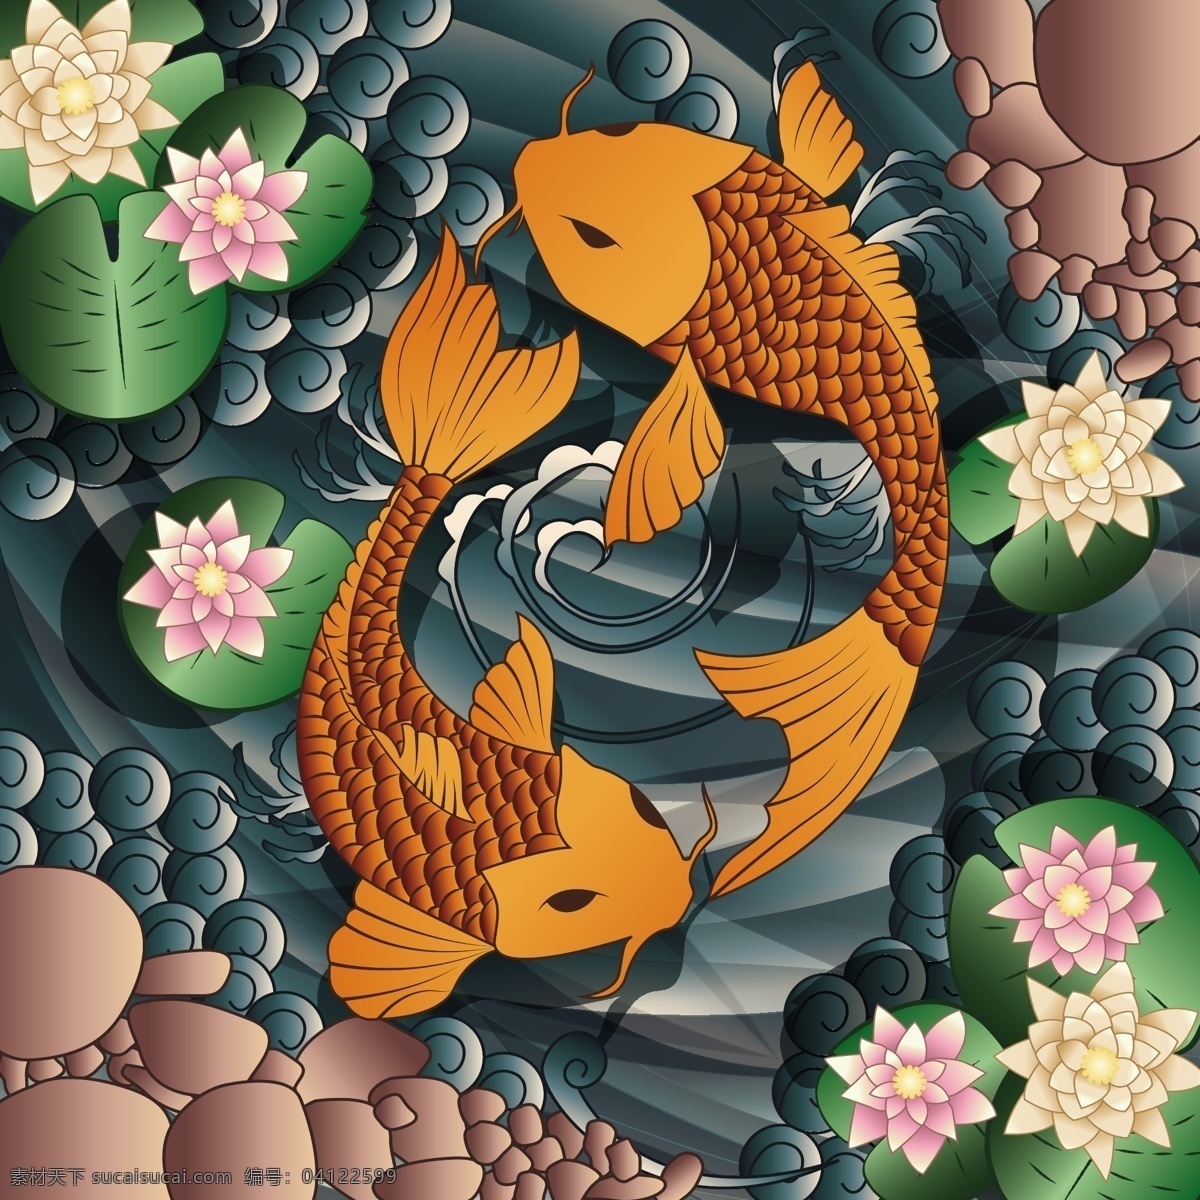 中国 风 手绘 金色 锦鲤 可爱 卡通 卡哇伊 矢量素材 动物 小动物 创意设计 简约 创意 元素 生物元素 动物元素